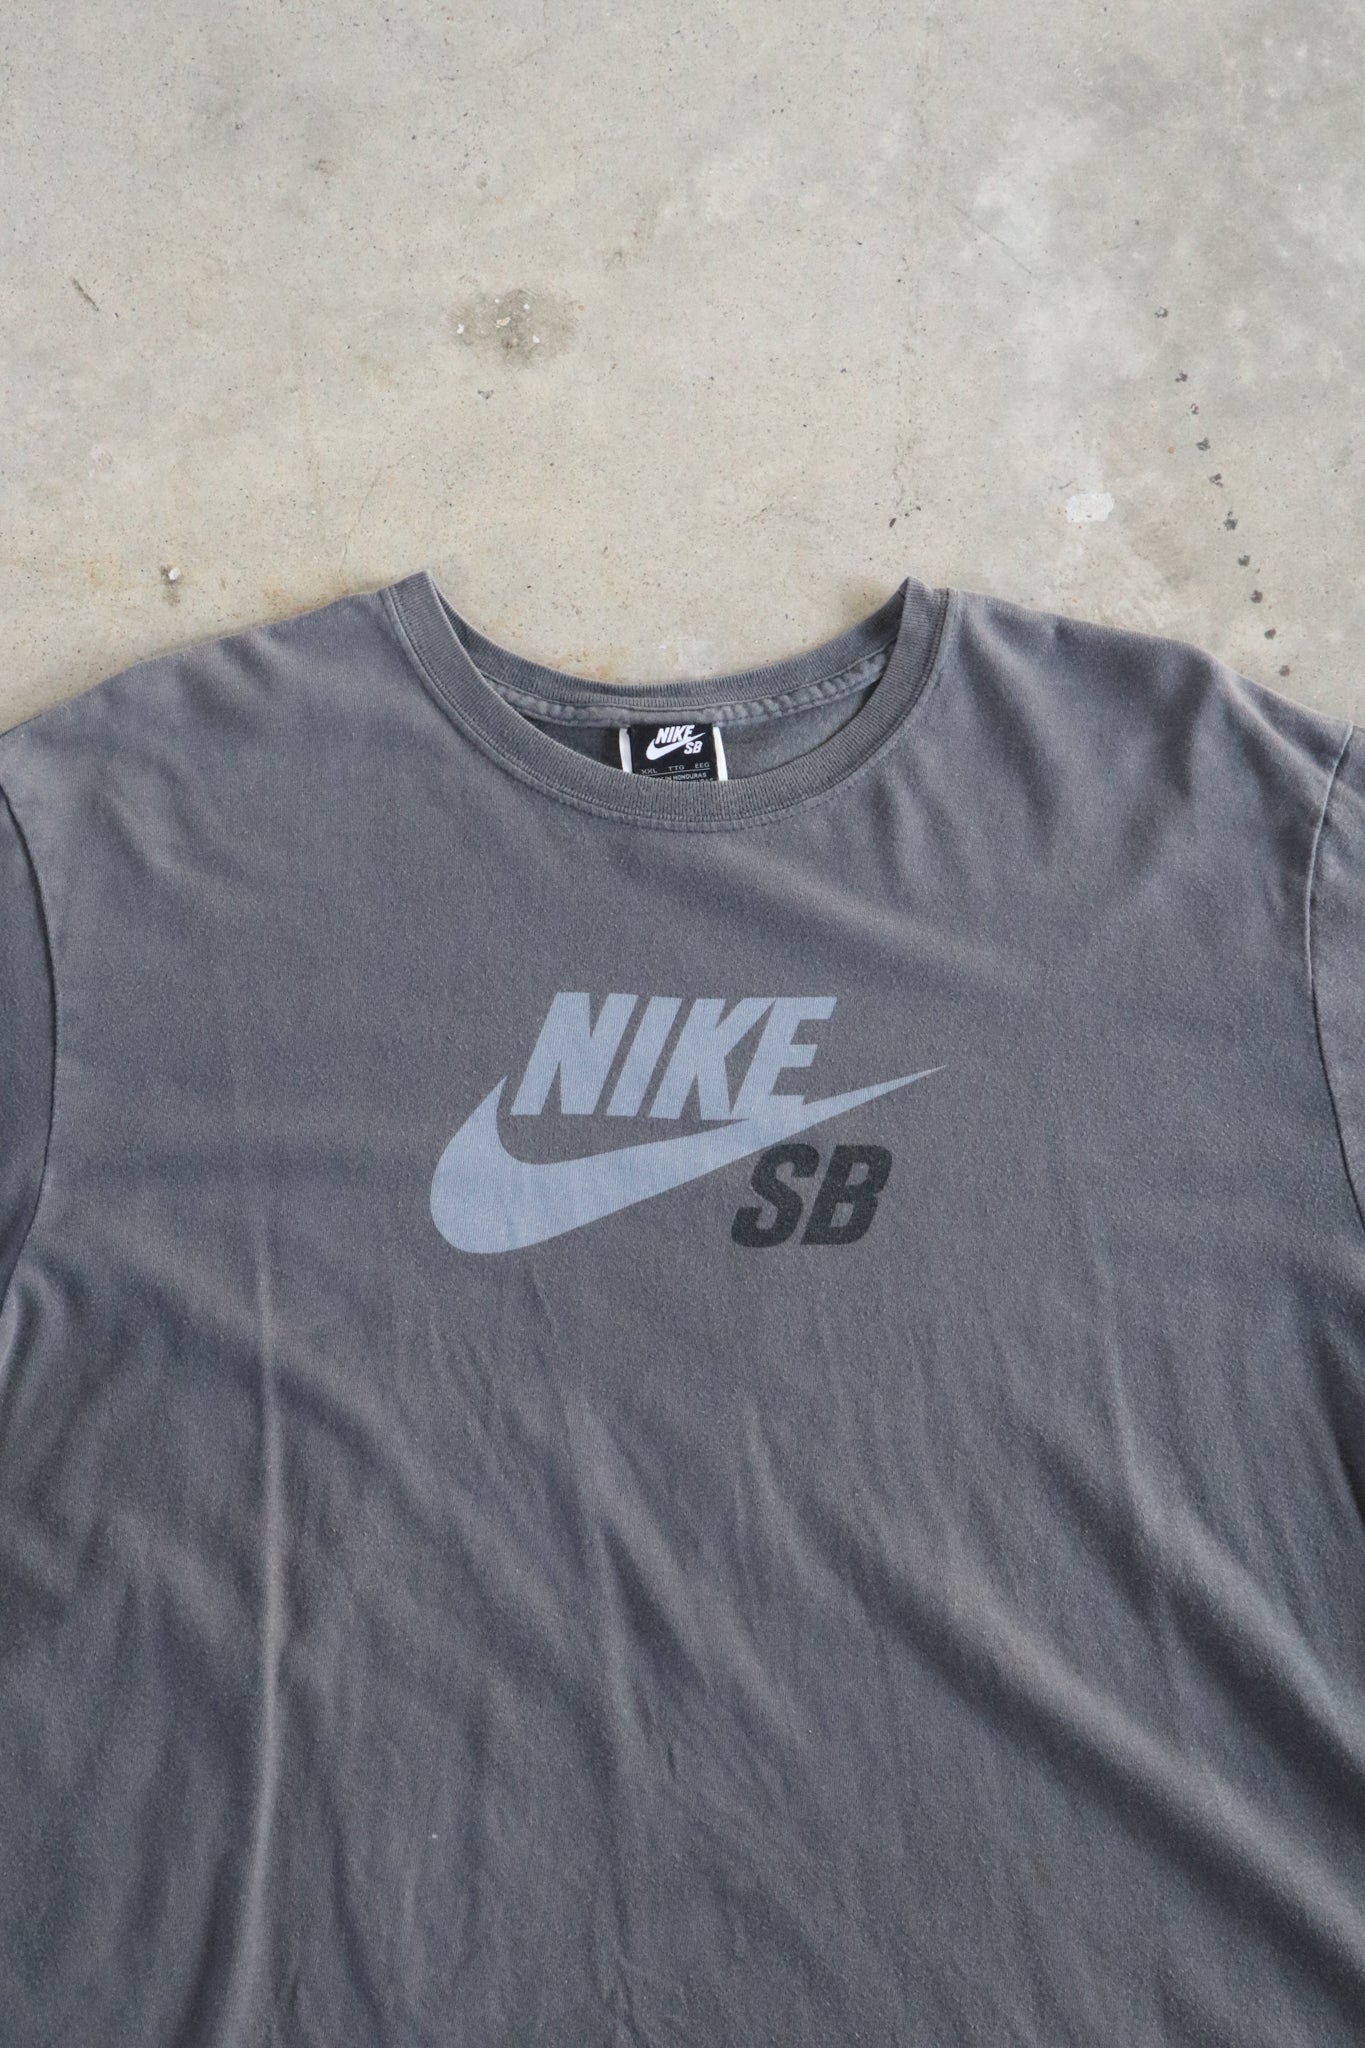 Vintage Nike SB Tee XXL